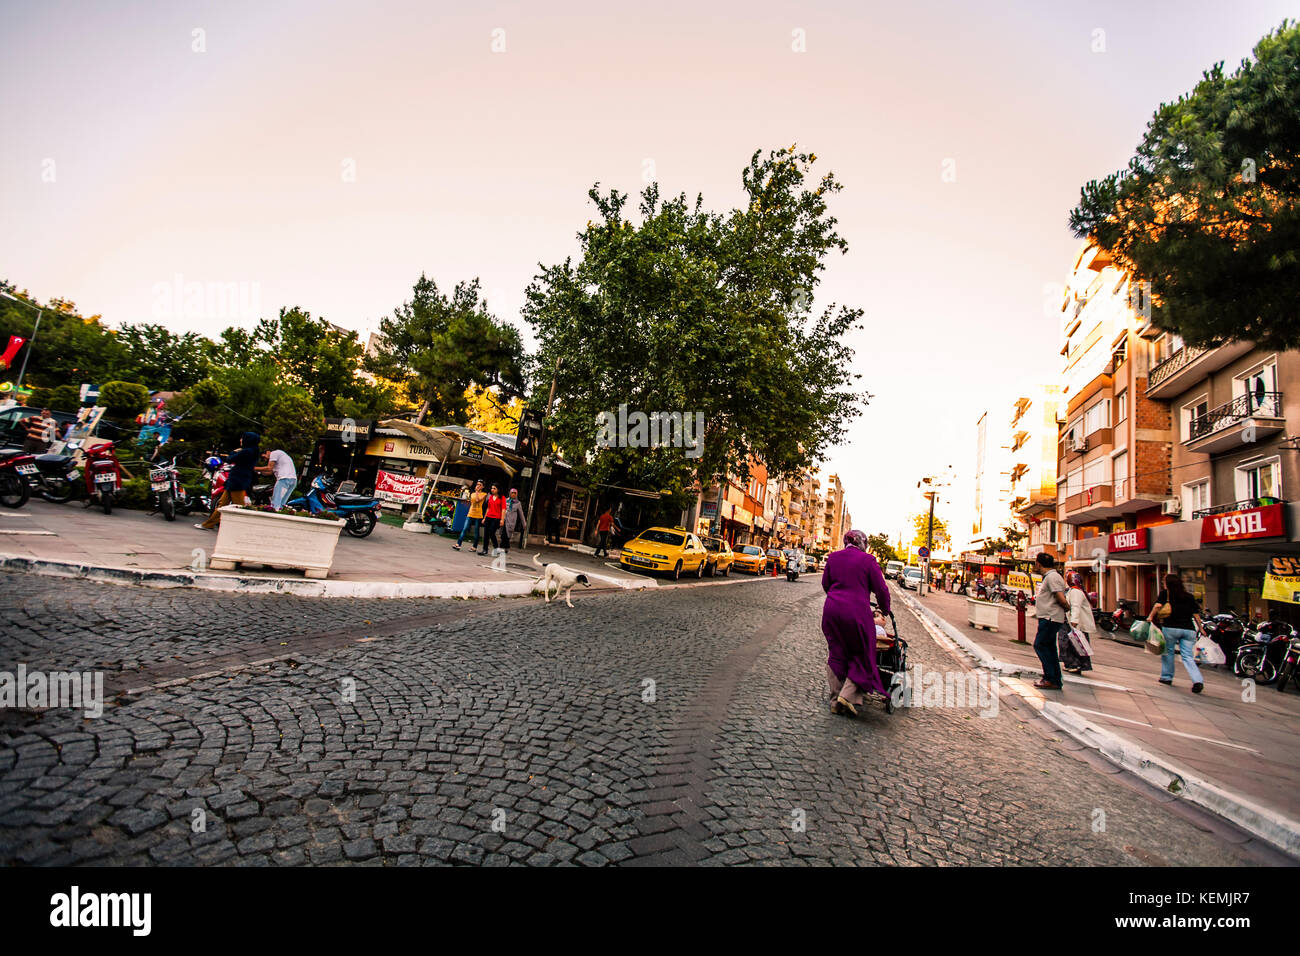 Le strade della cittadina, Turchia 2013 Foto Stock